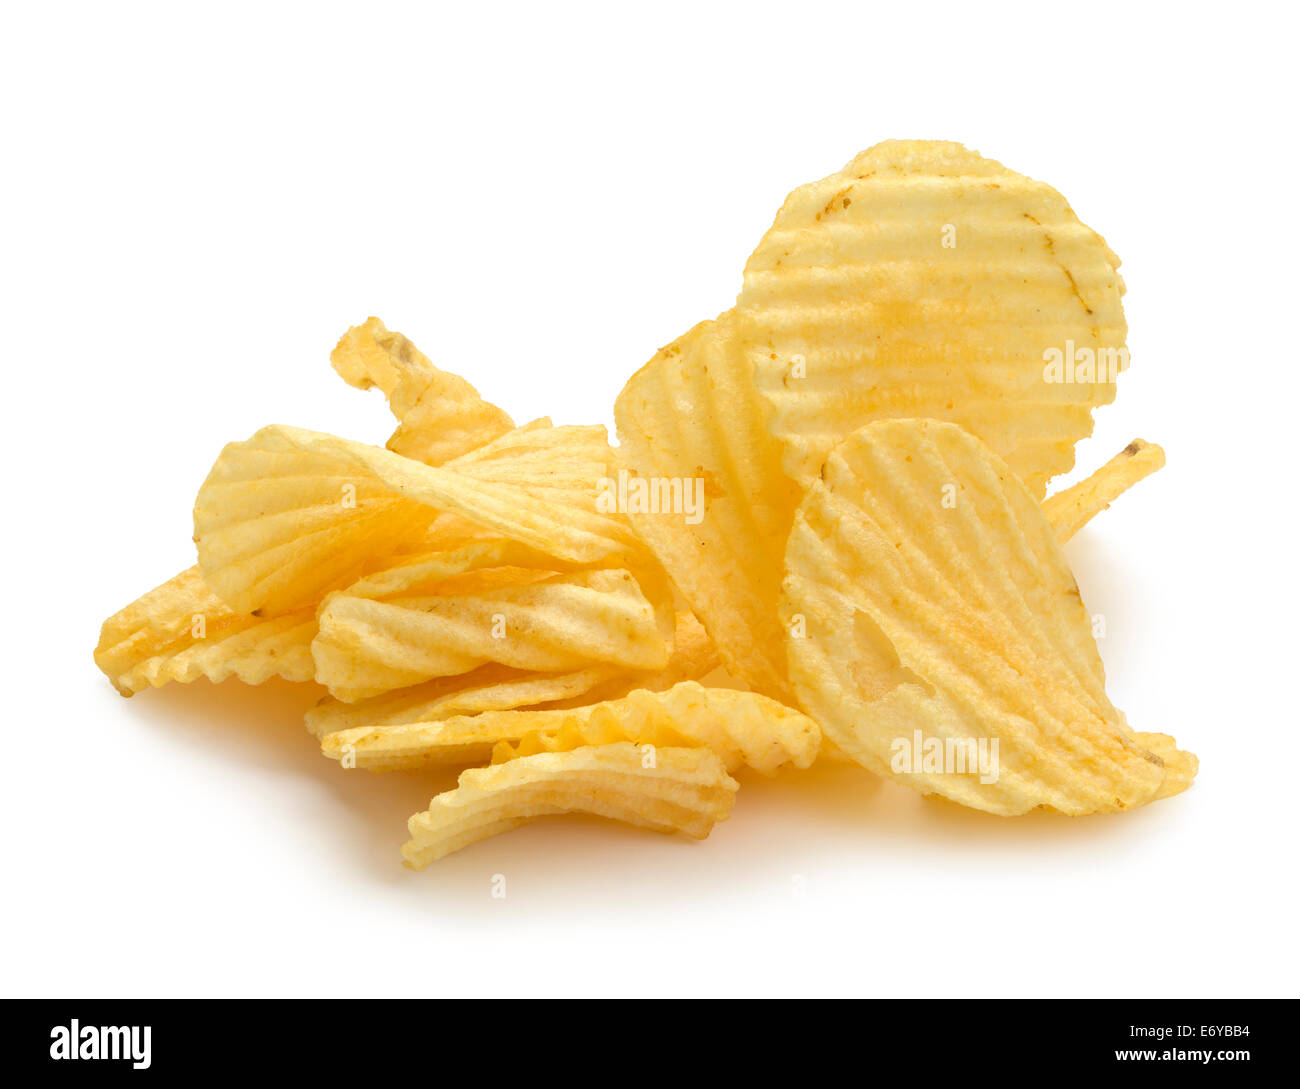 Pile of Wrinkled Wavy Potato Chips Isolated on White Background. Stock Photo